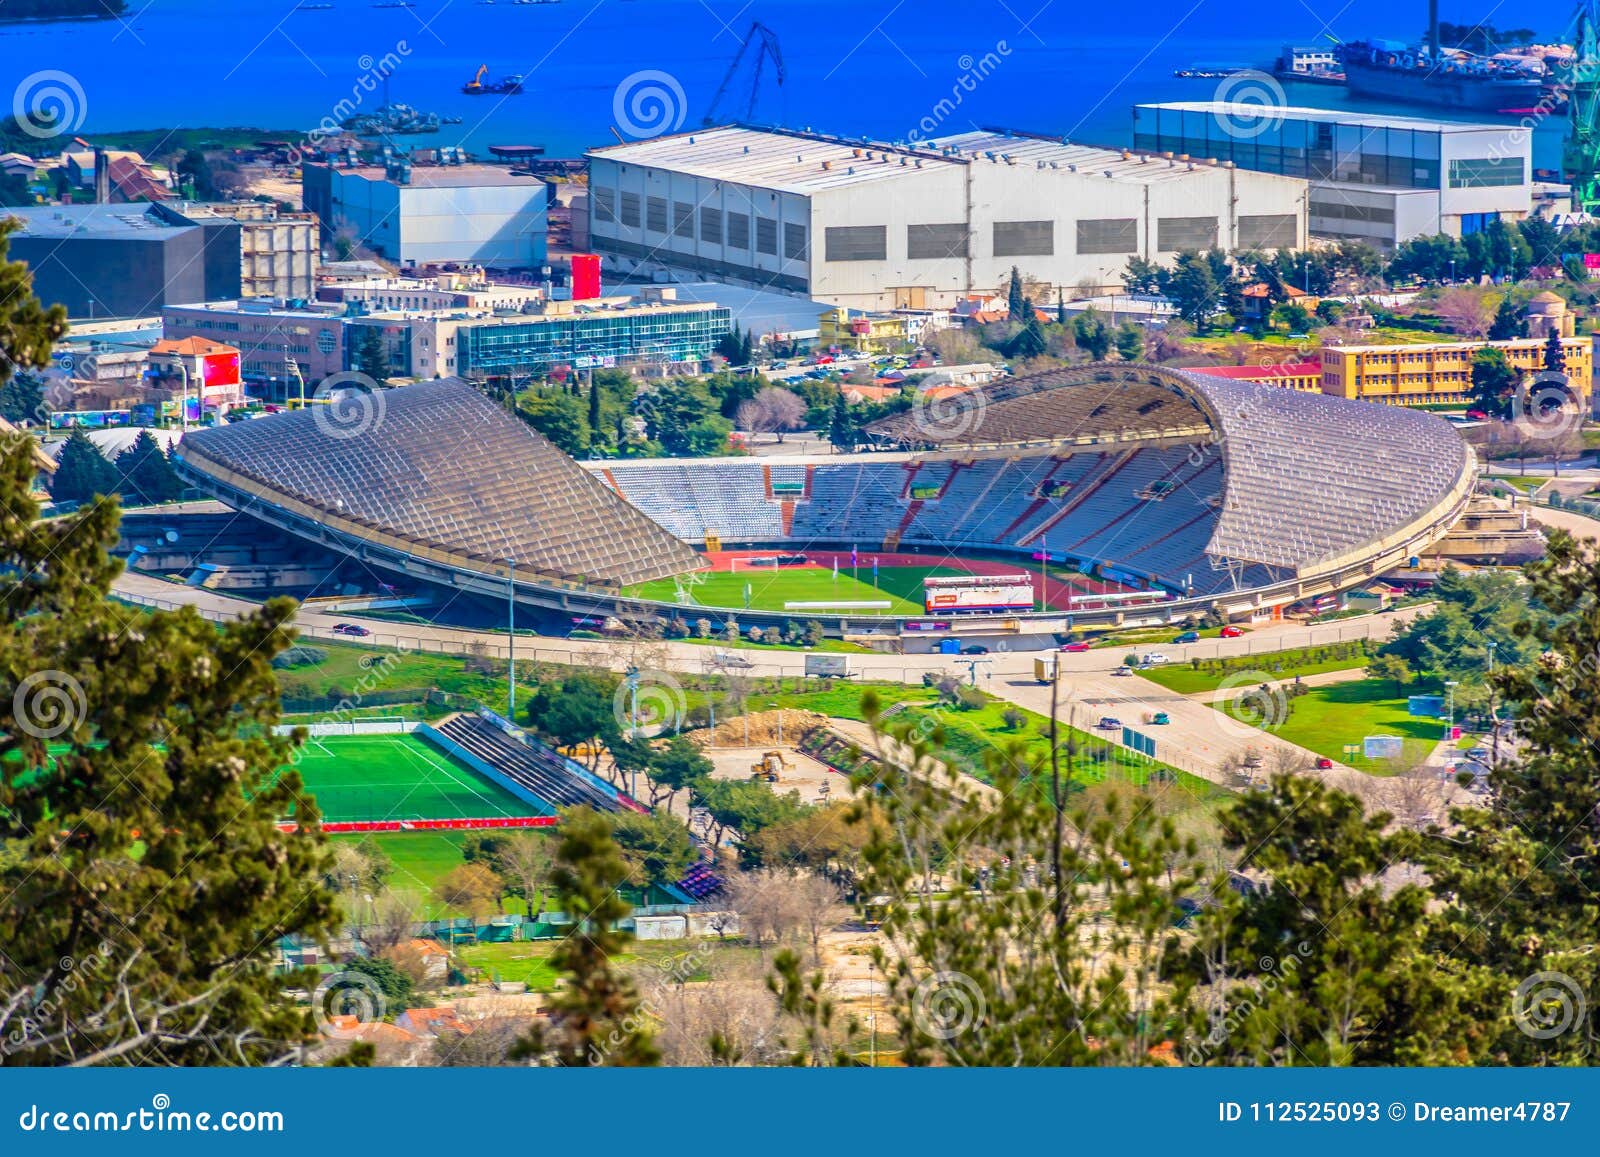 aerial view at poljud stadium in split city, croatia.